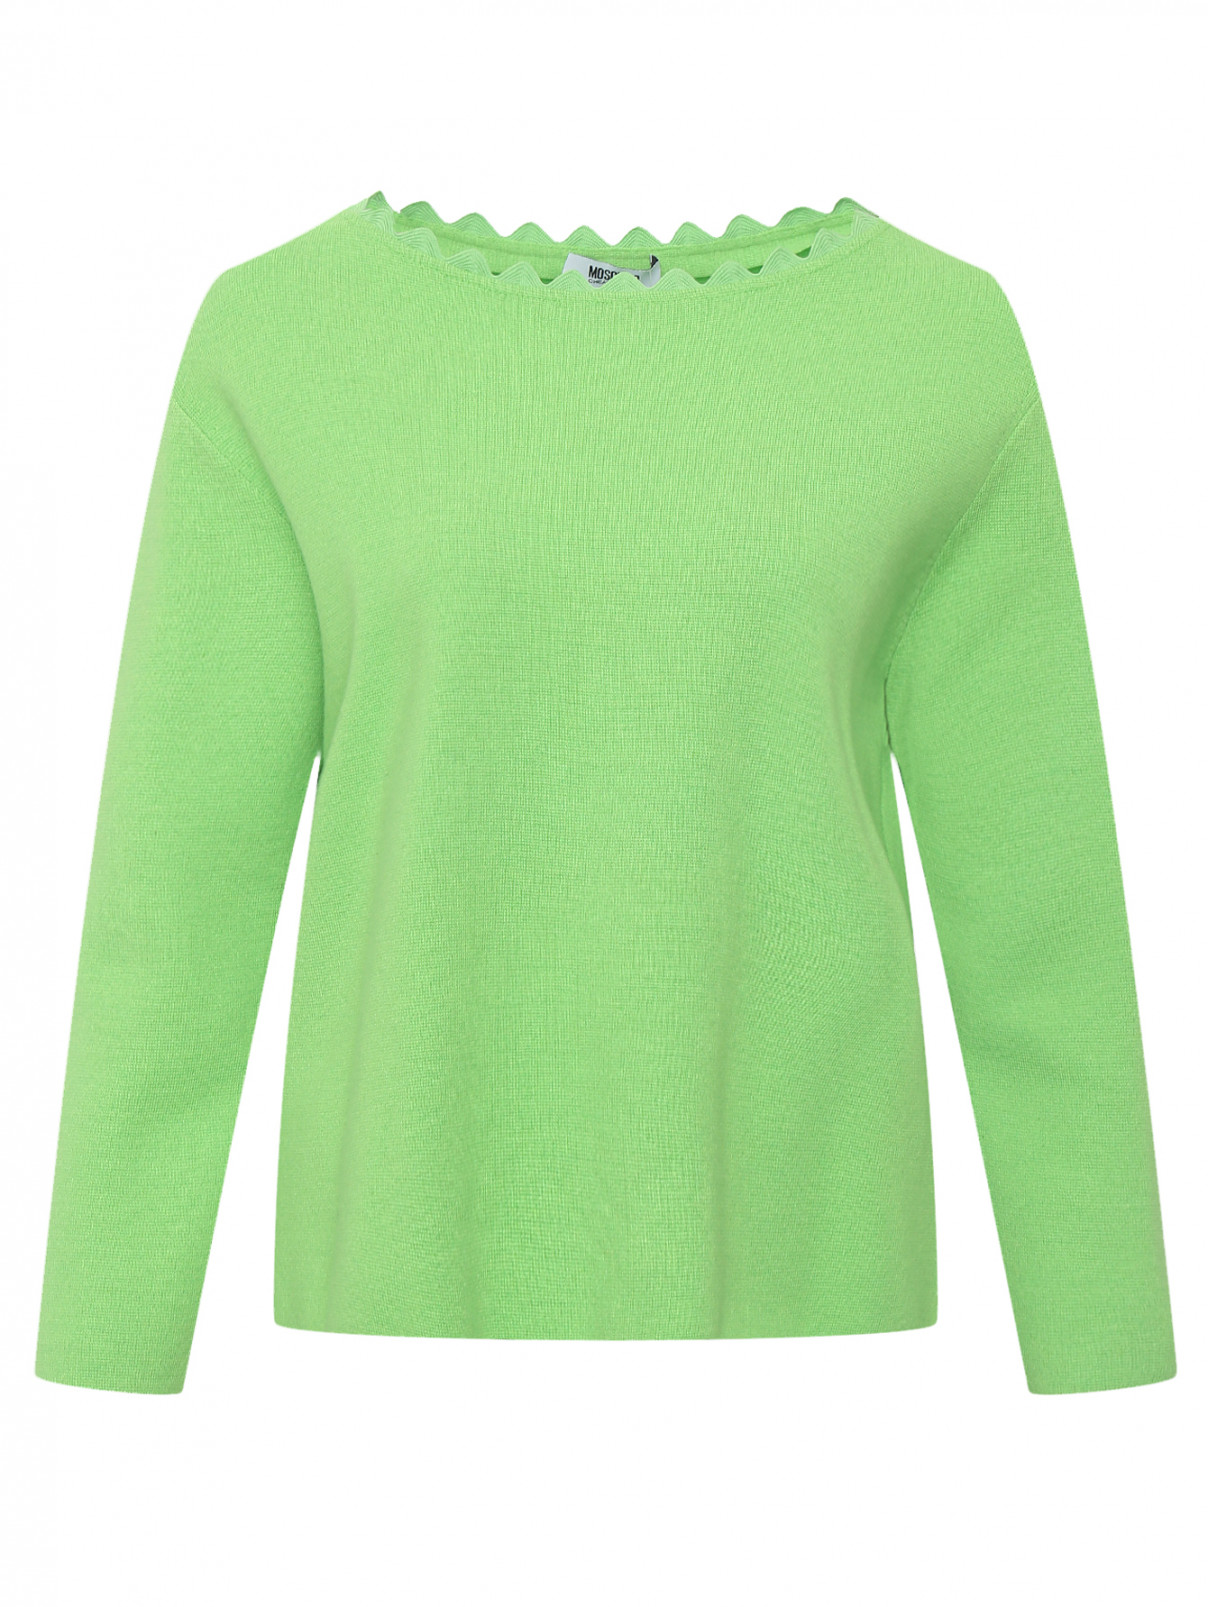 Джемпер из шерсти и хлопка Moschino Cheap&Chic  –  Общий вид  – Цвет:  Зеленый